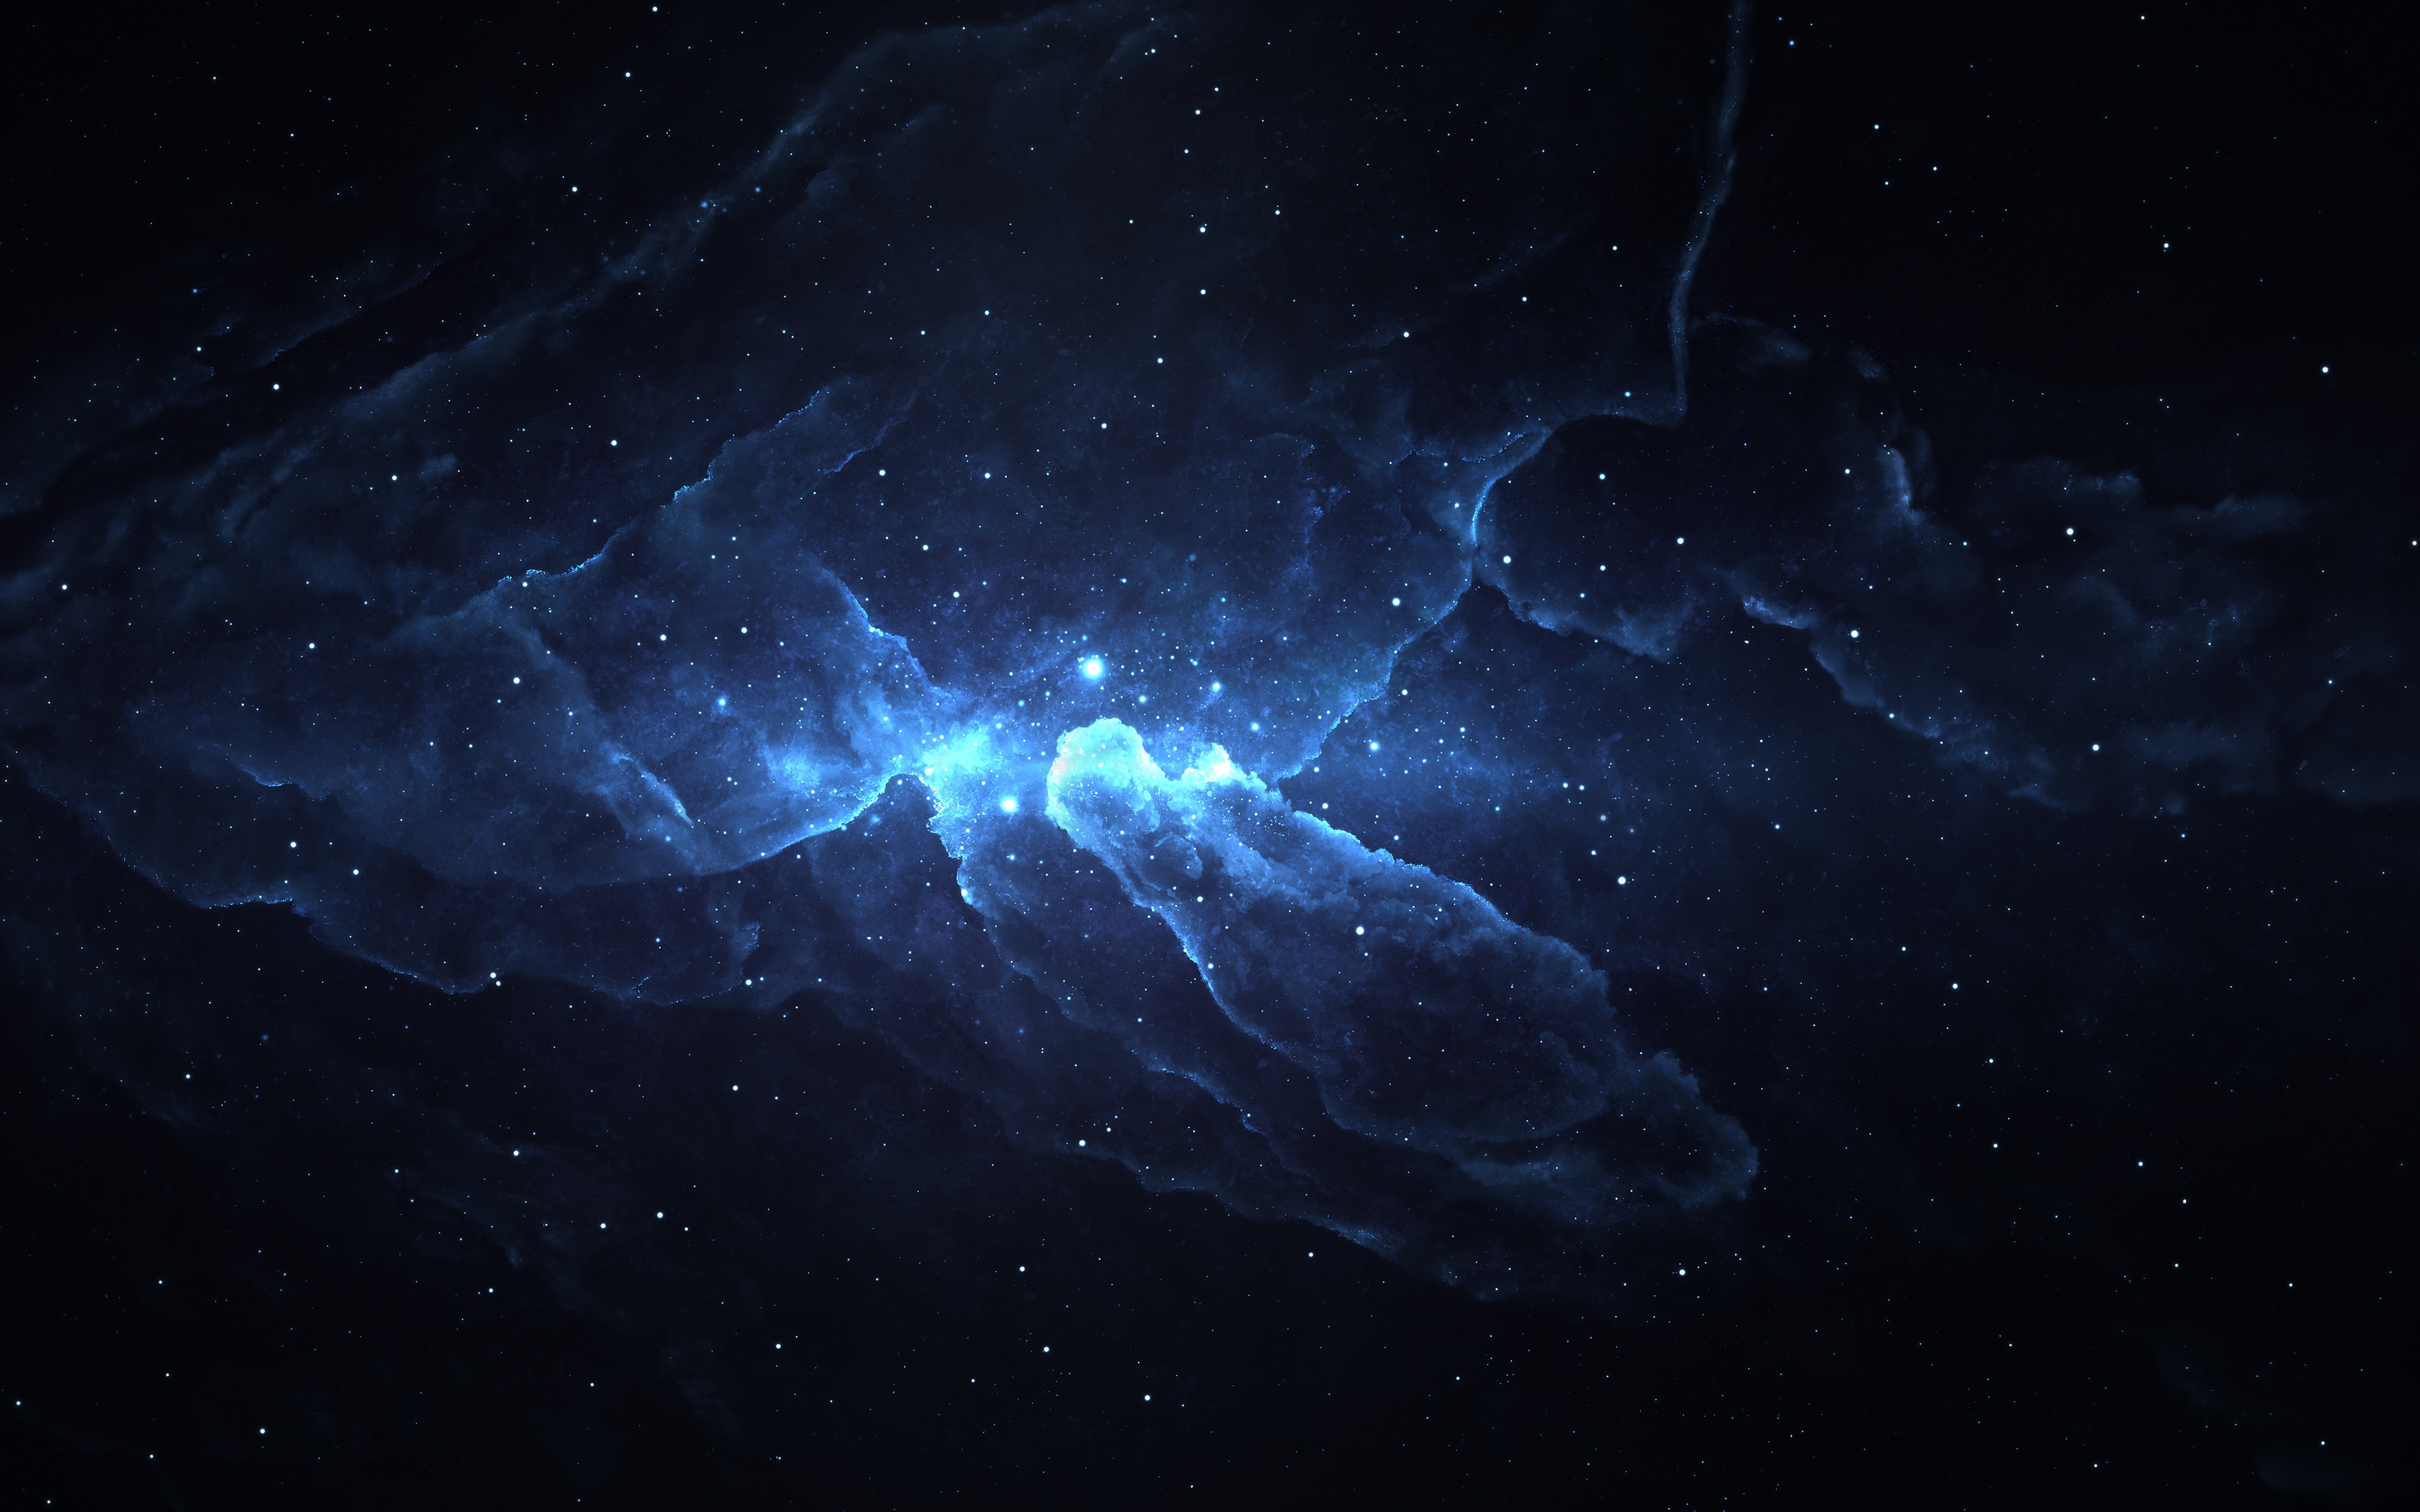 Atlantis Nebula 4 for 3840 x 2400 Widescreen resolution